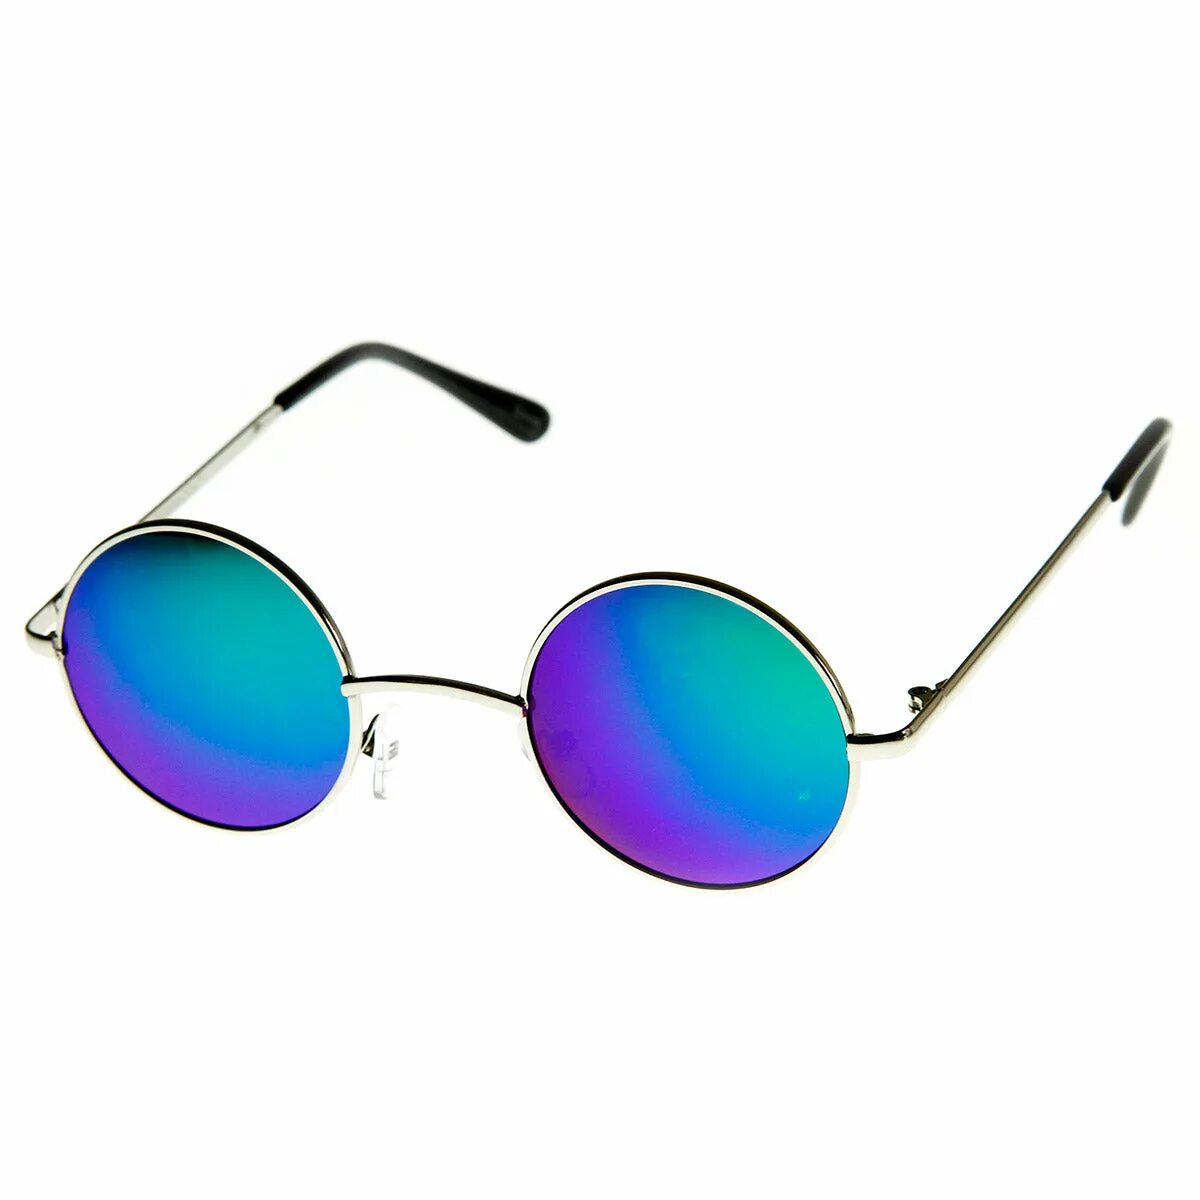 Очки солнцезащитные Vintage vts0356. Круглые очки. Круглые солнцезащитные очки. Очки круглые синие. Купить солнечные очки в москве